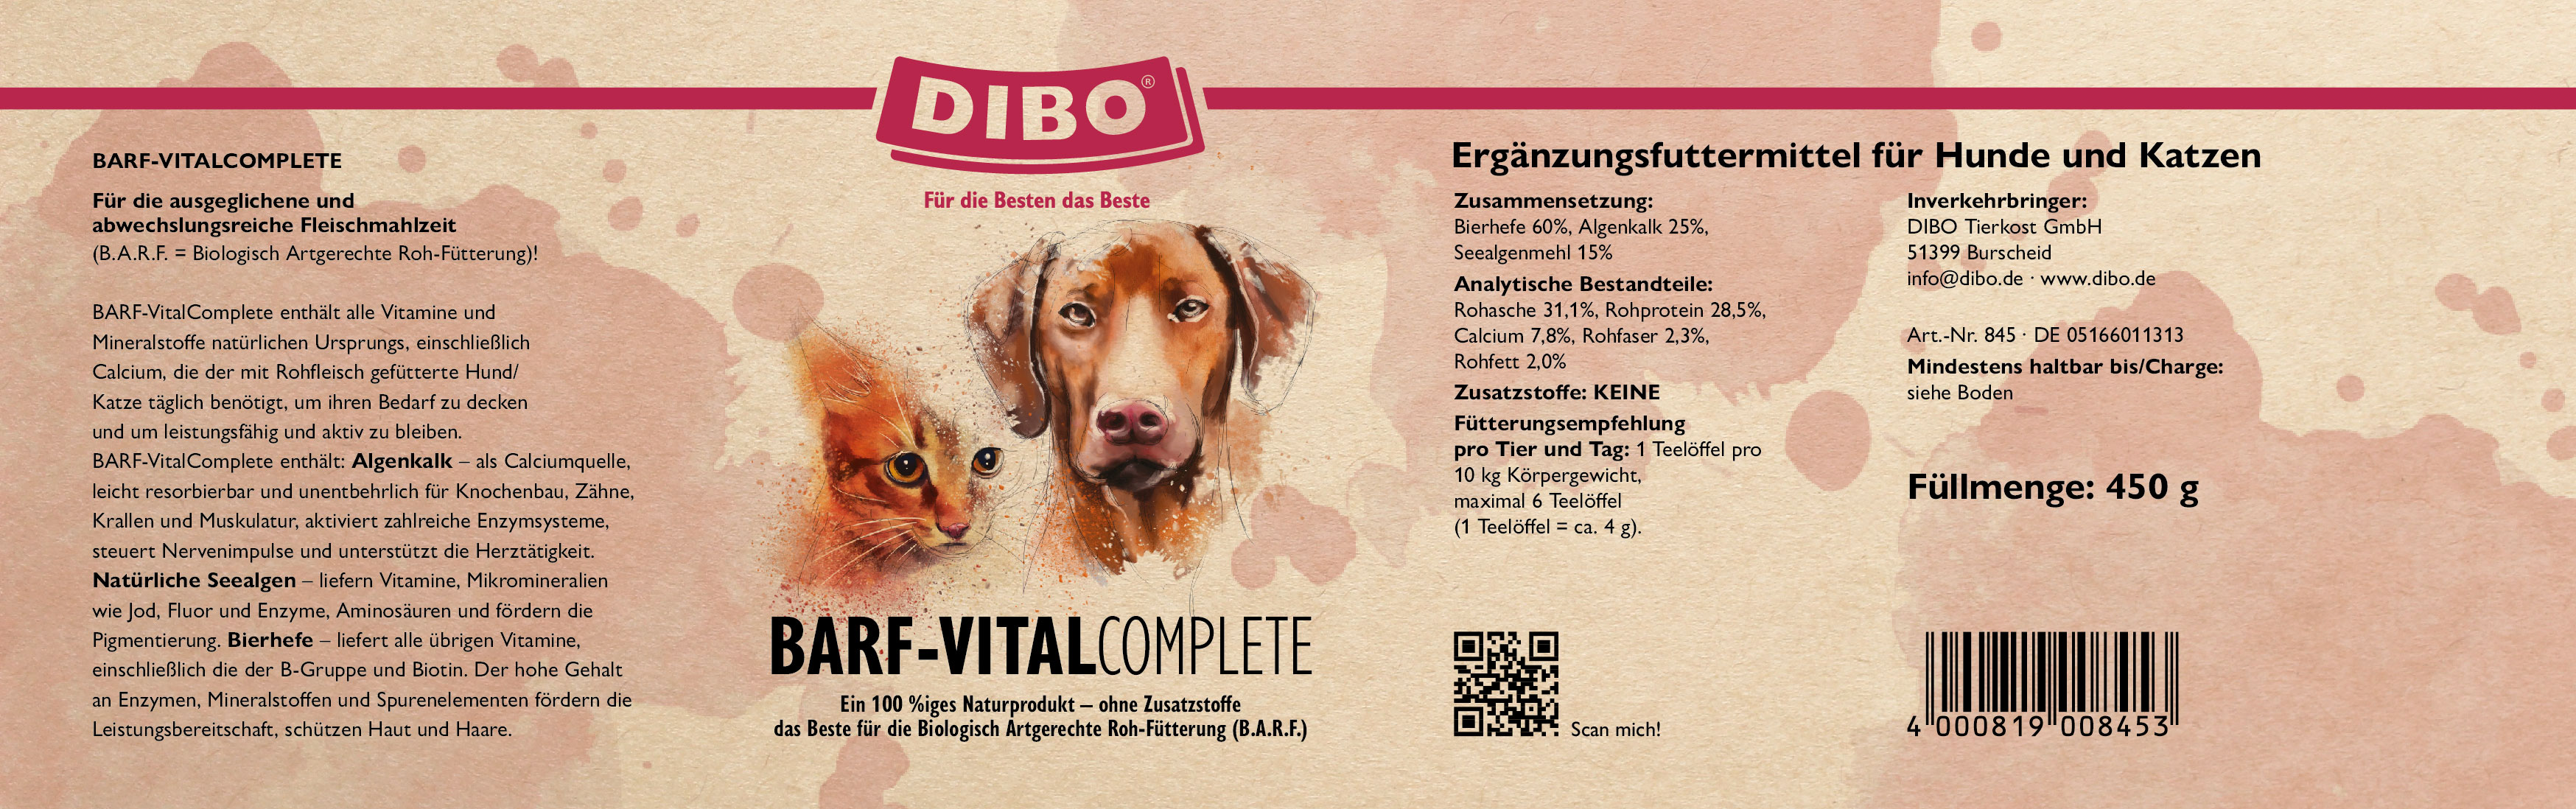 DIBO BARF VitalComplete, 450g-Dose